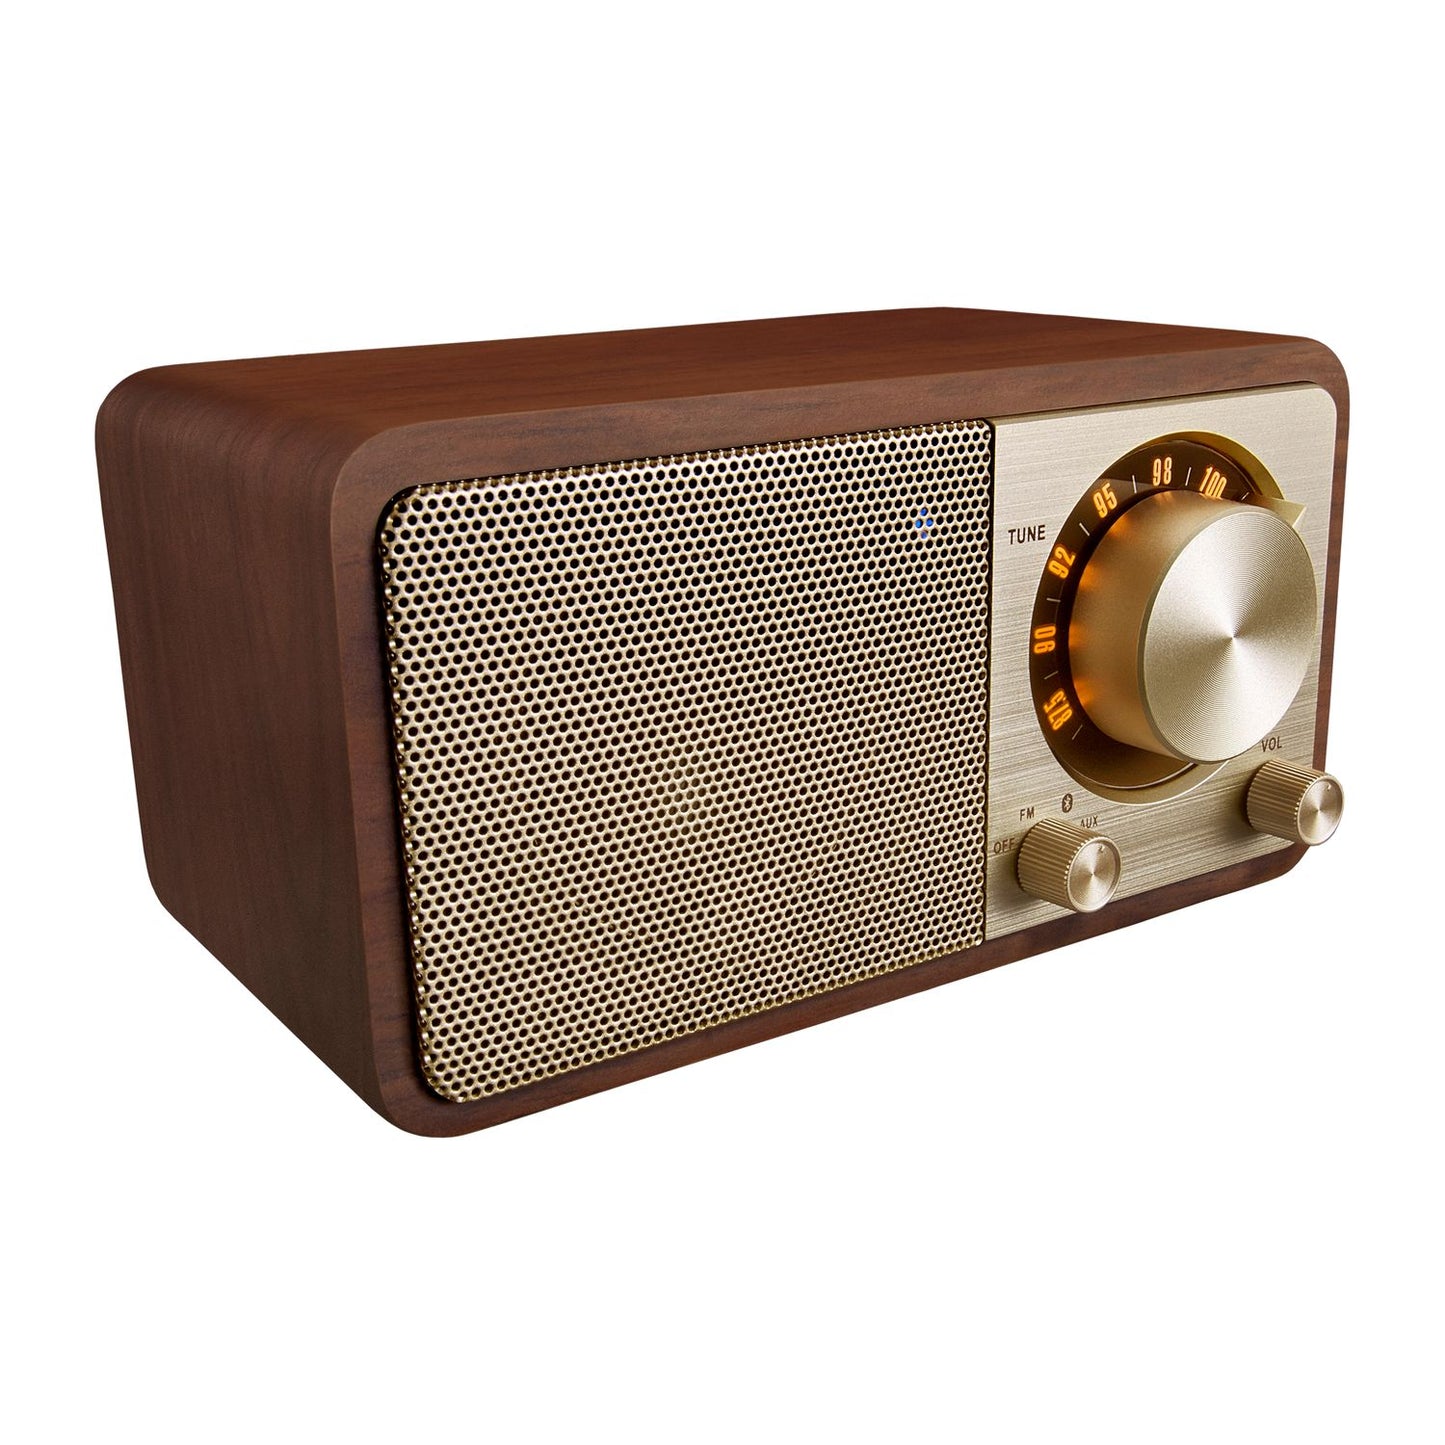 Radio FM compacte Sangean WR-7 avec Bluetooth, autonomie 36h, design rétro